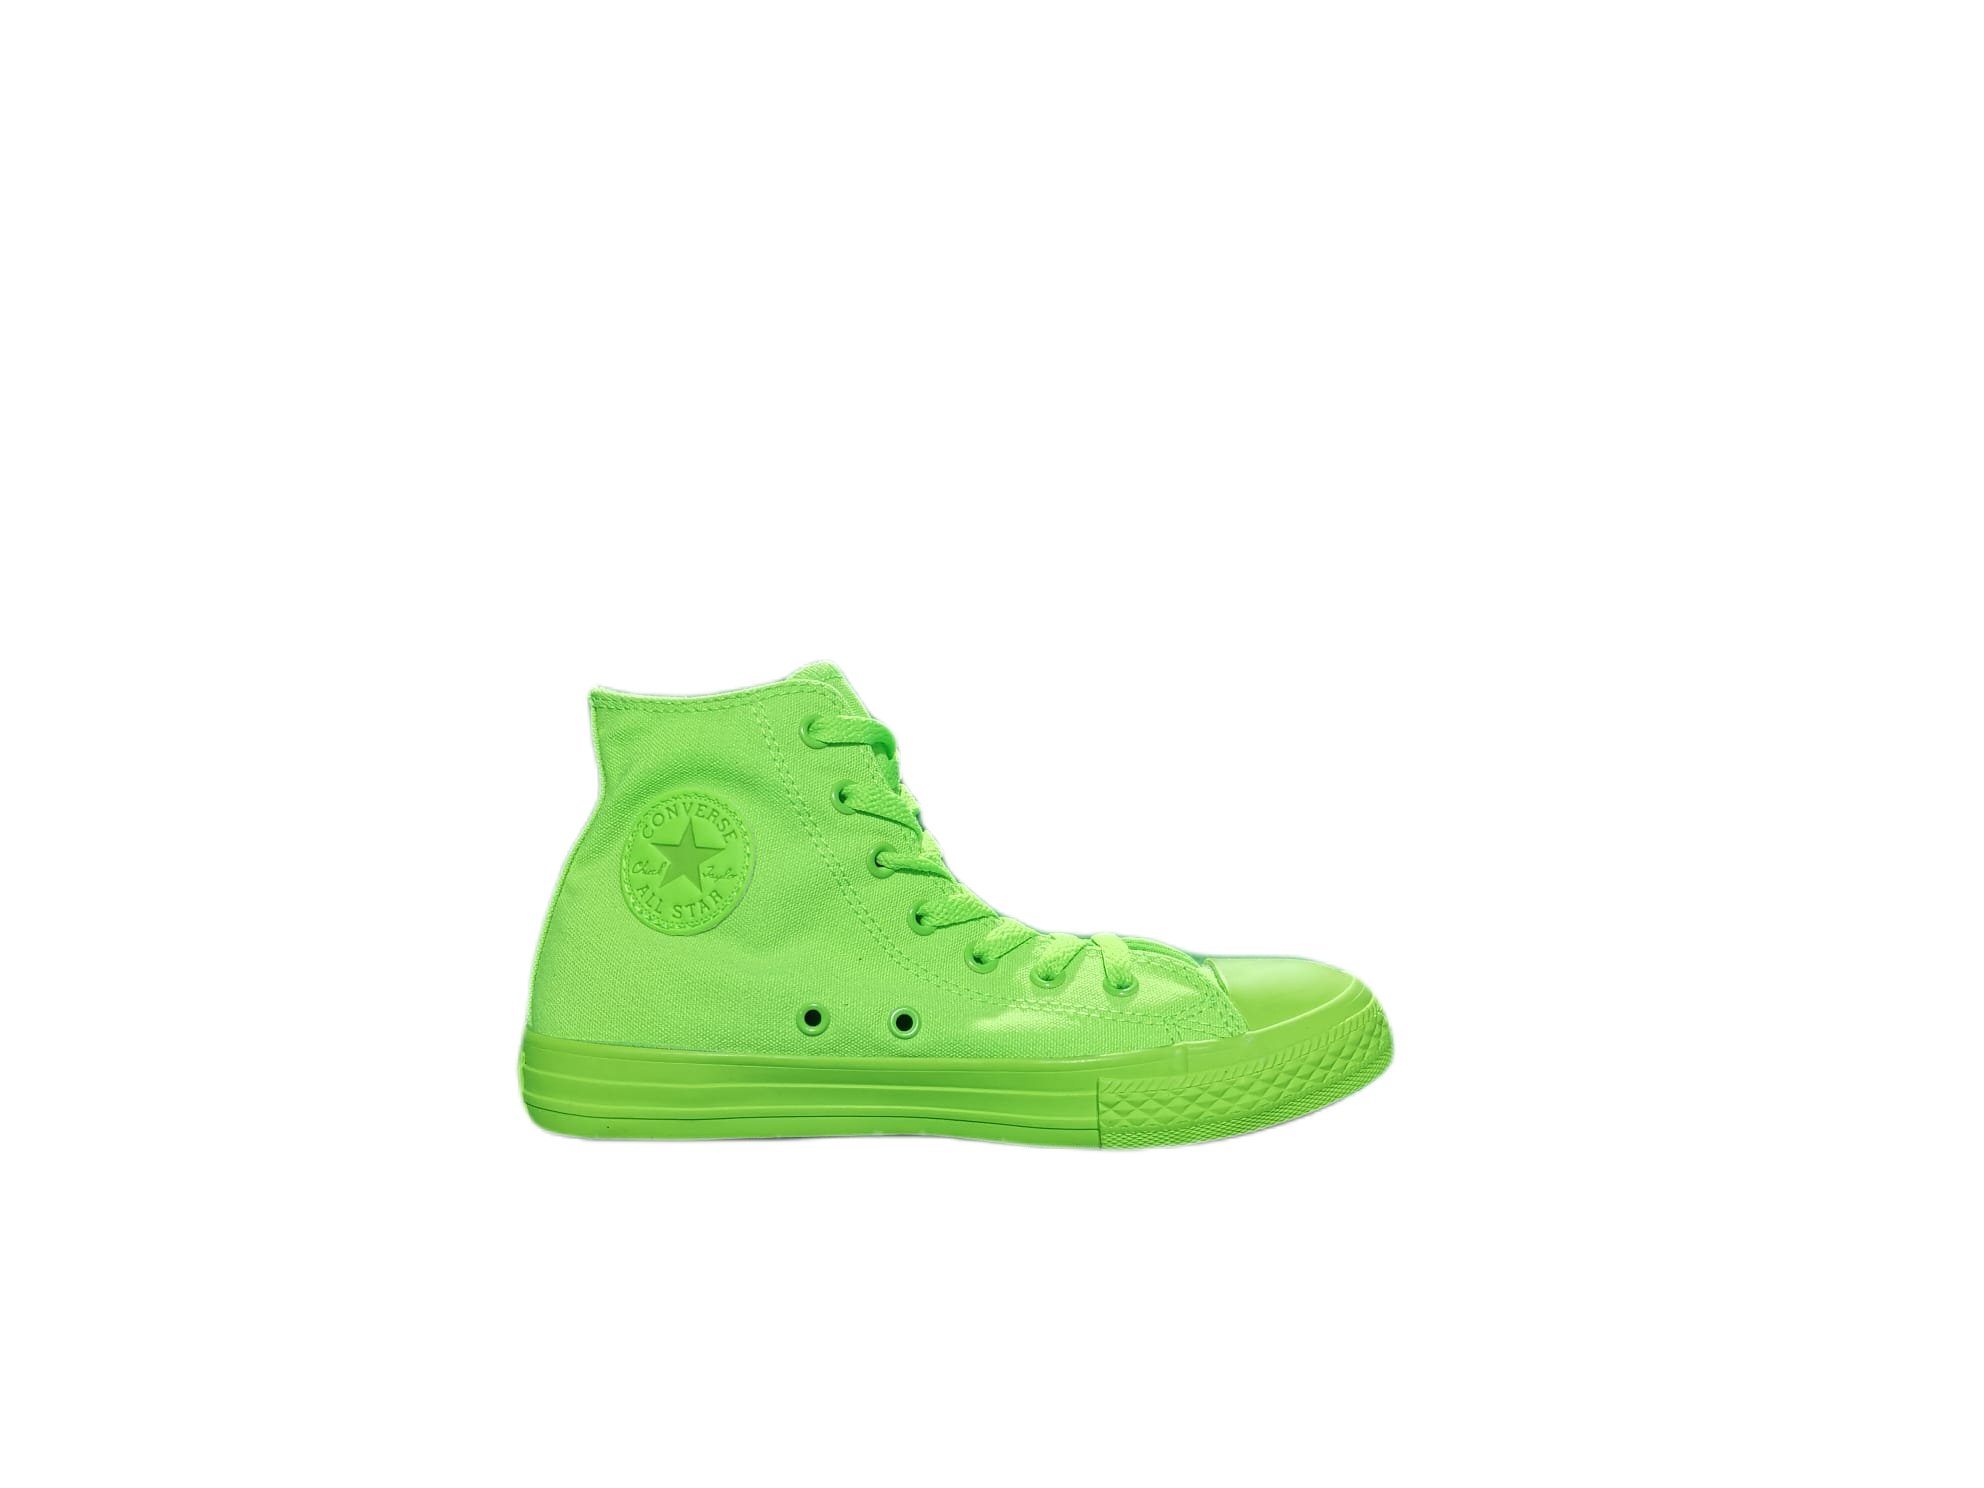 Scarpa Converse CTAS Hi Verde Fluo Fosforescente Donna Uomo Sneakers  656852C | eBay